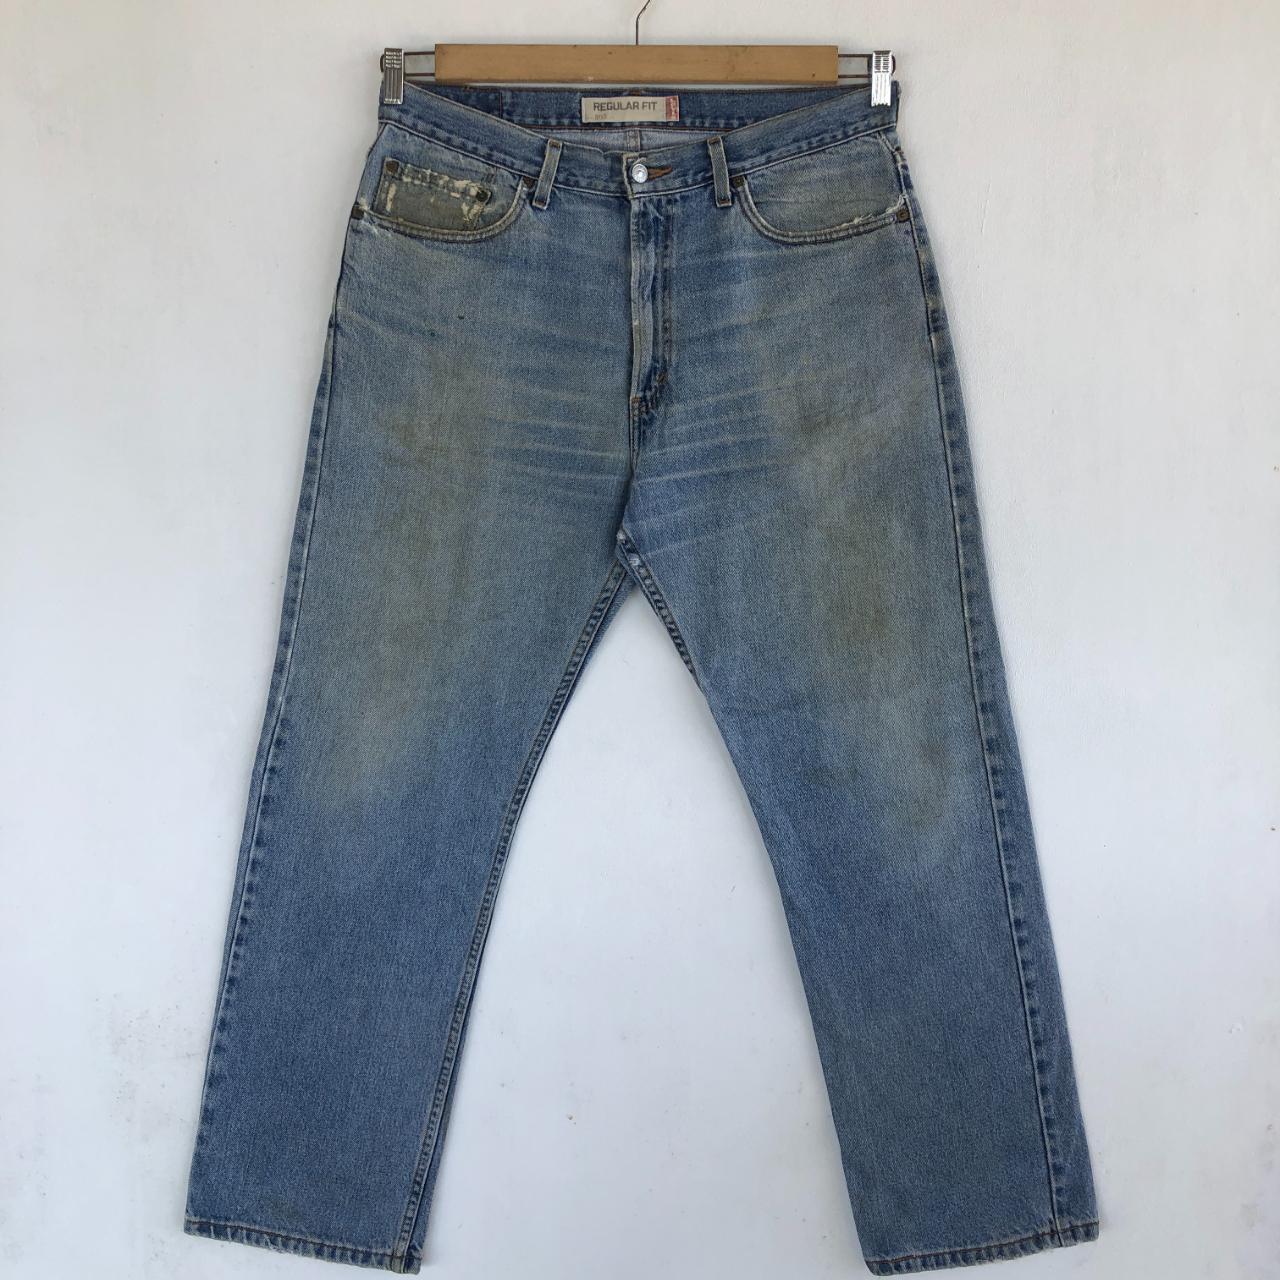 Vintage Levis Jeans Dirty Levis 505 Denim... - Depop